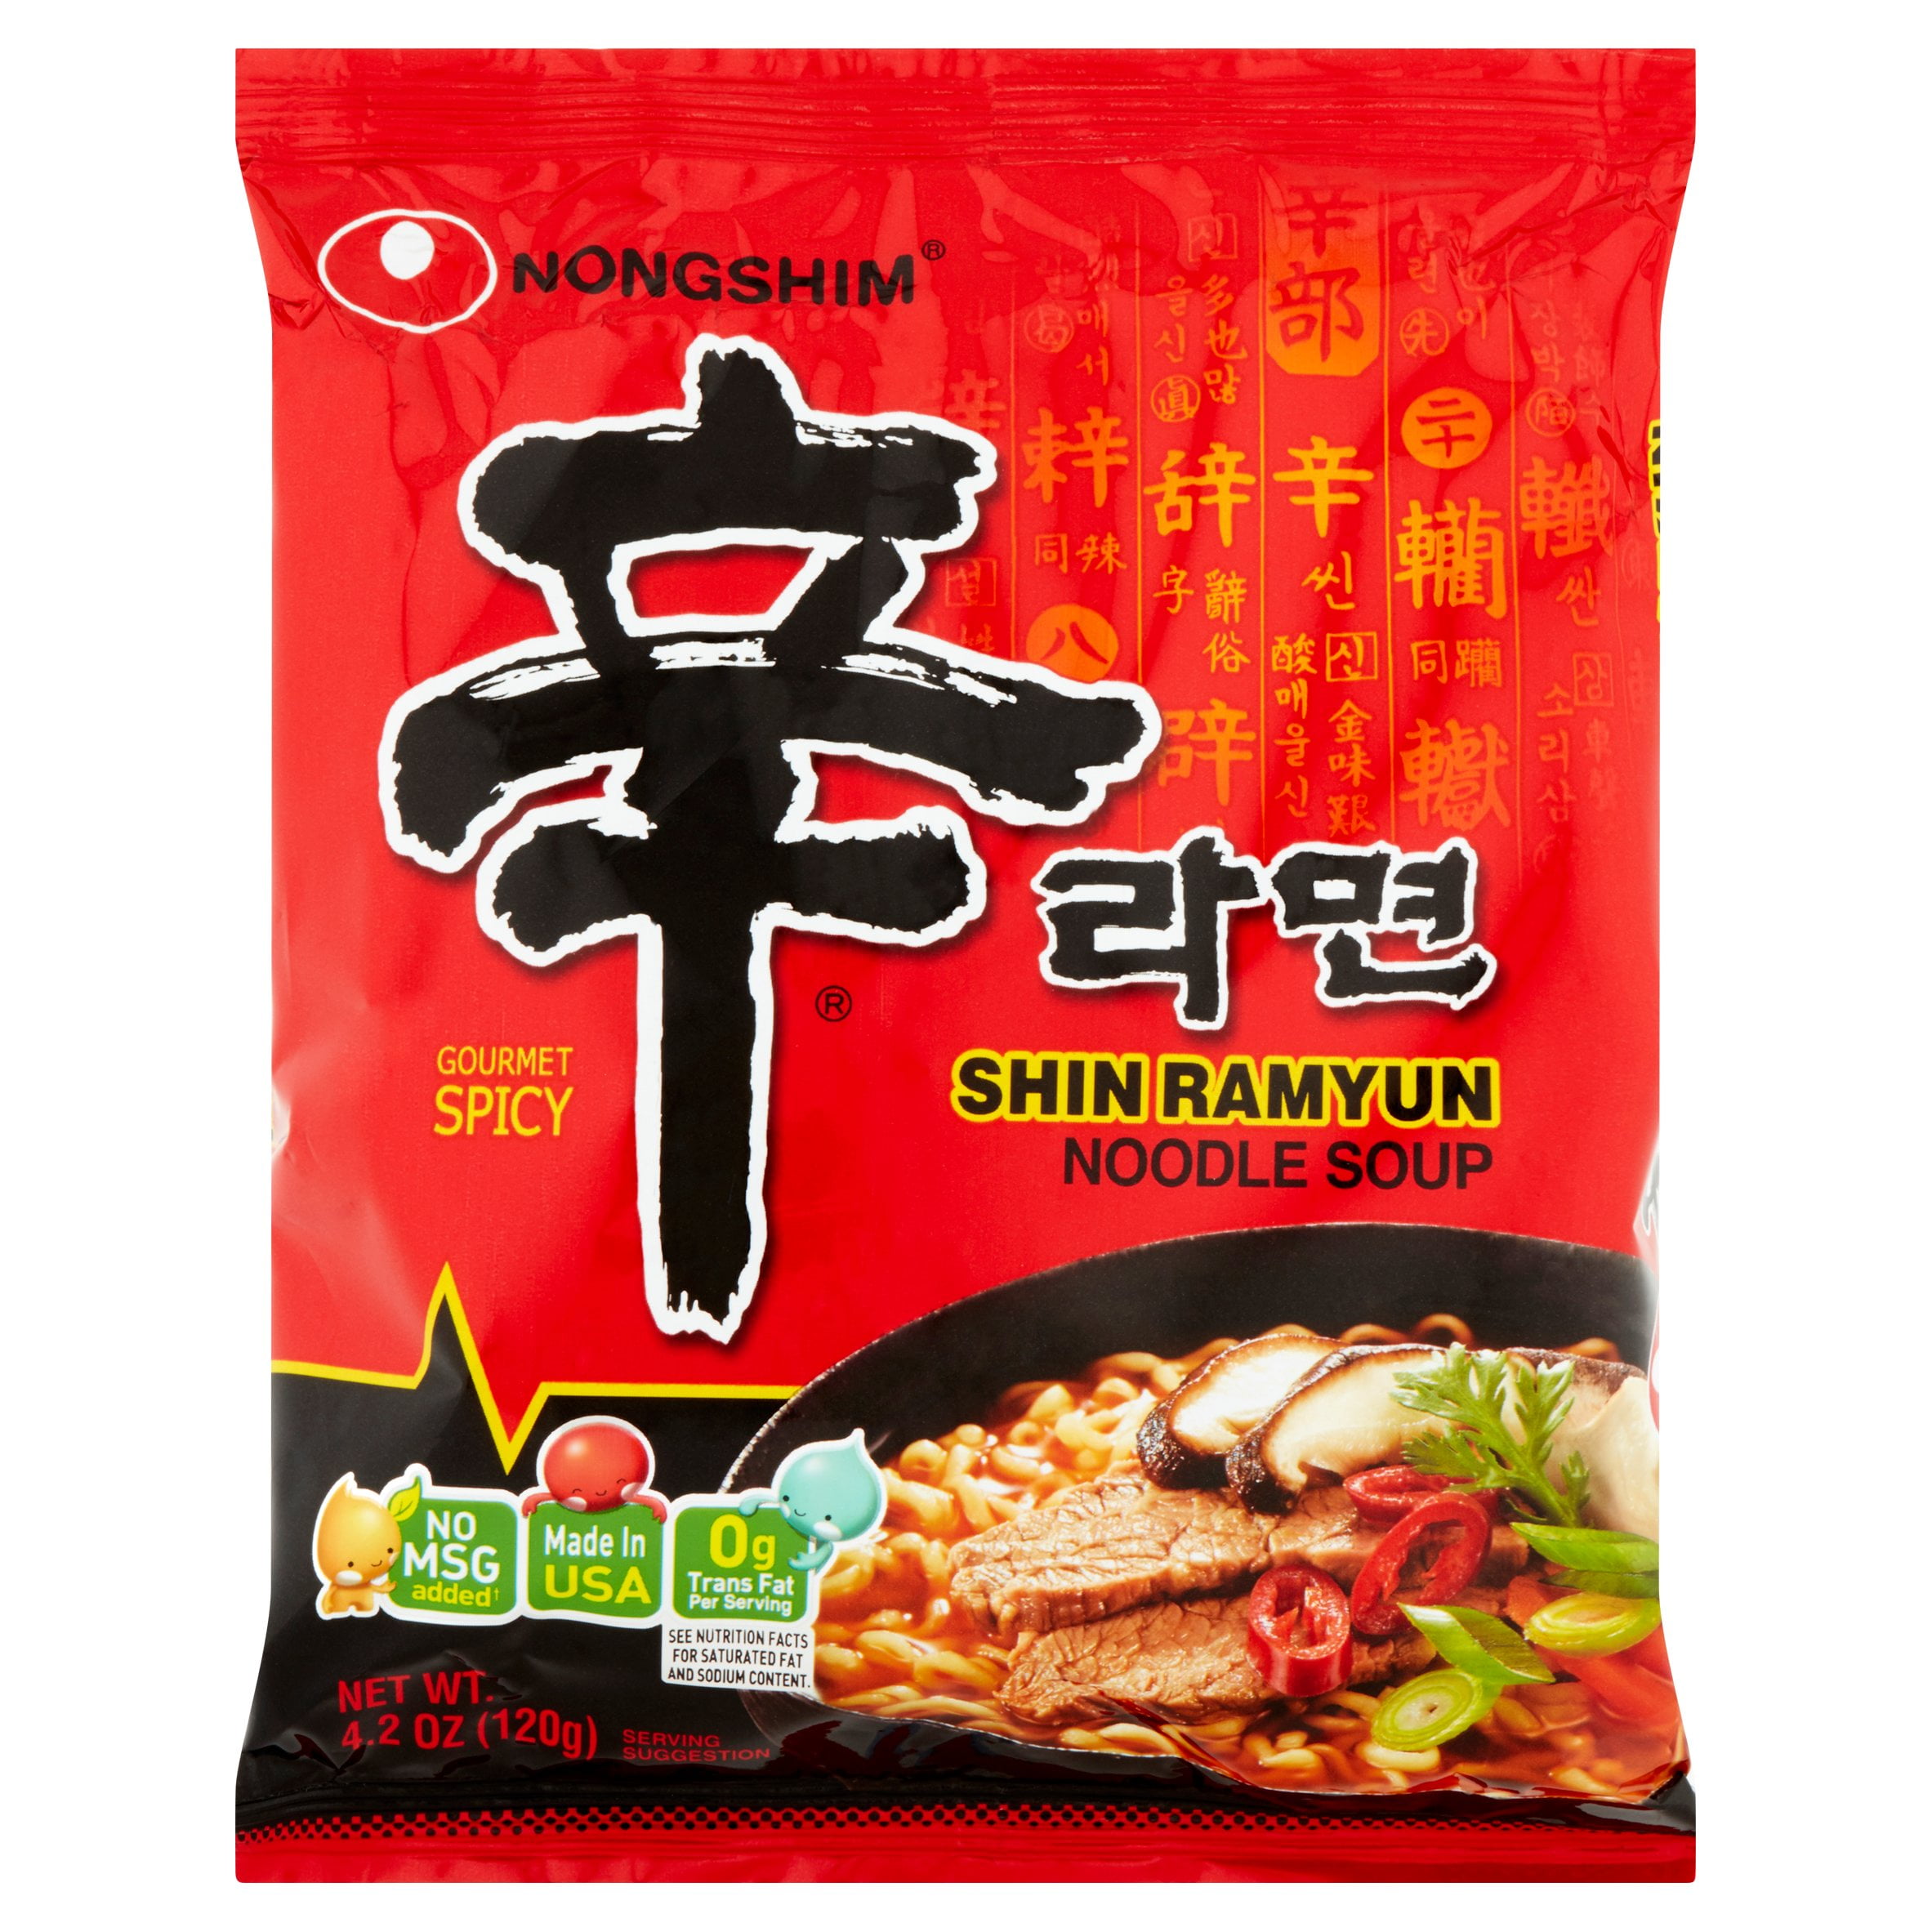 så meget Diverse Fest Nongshim Gourmet Spicy Shin Ramyun Noodle Soup, 4.2 oz, 10 pack -  Walmart.com